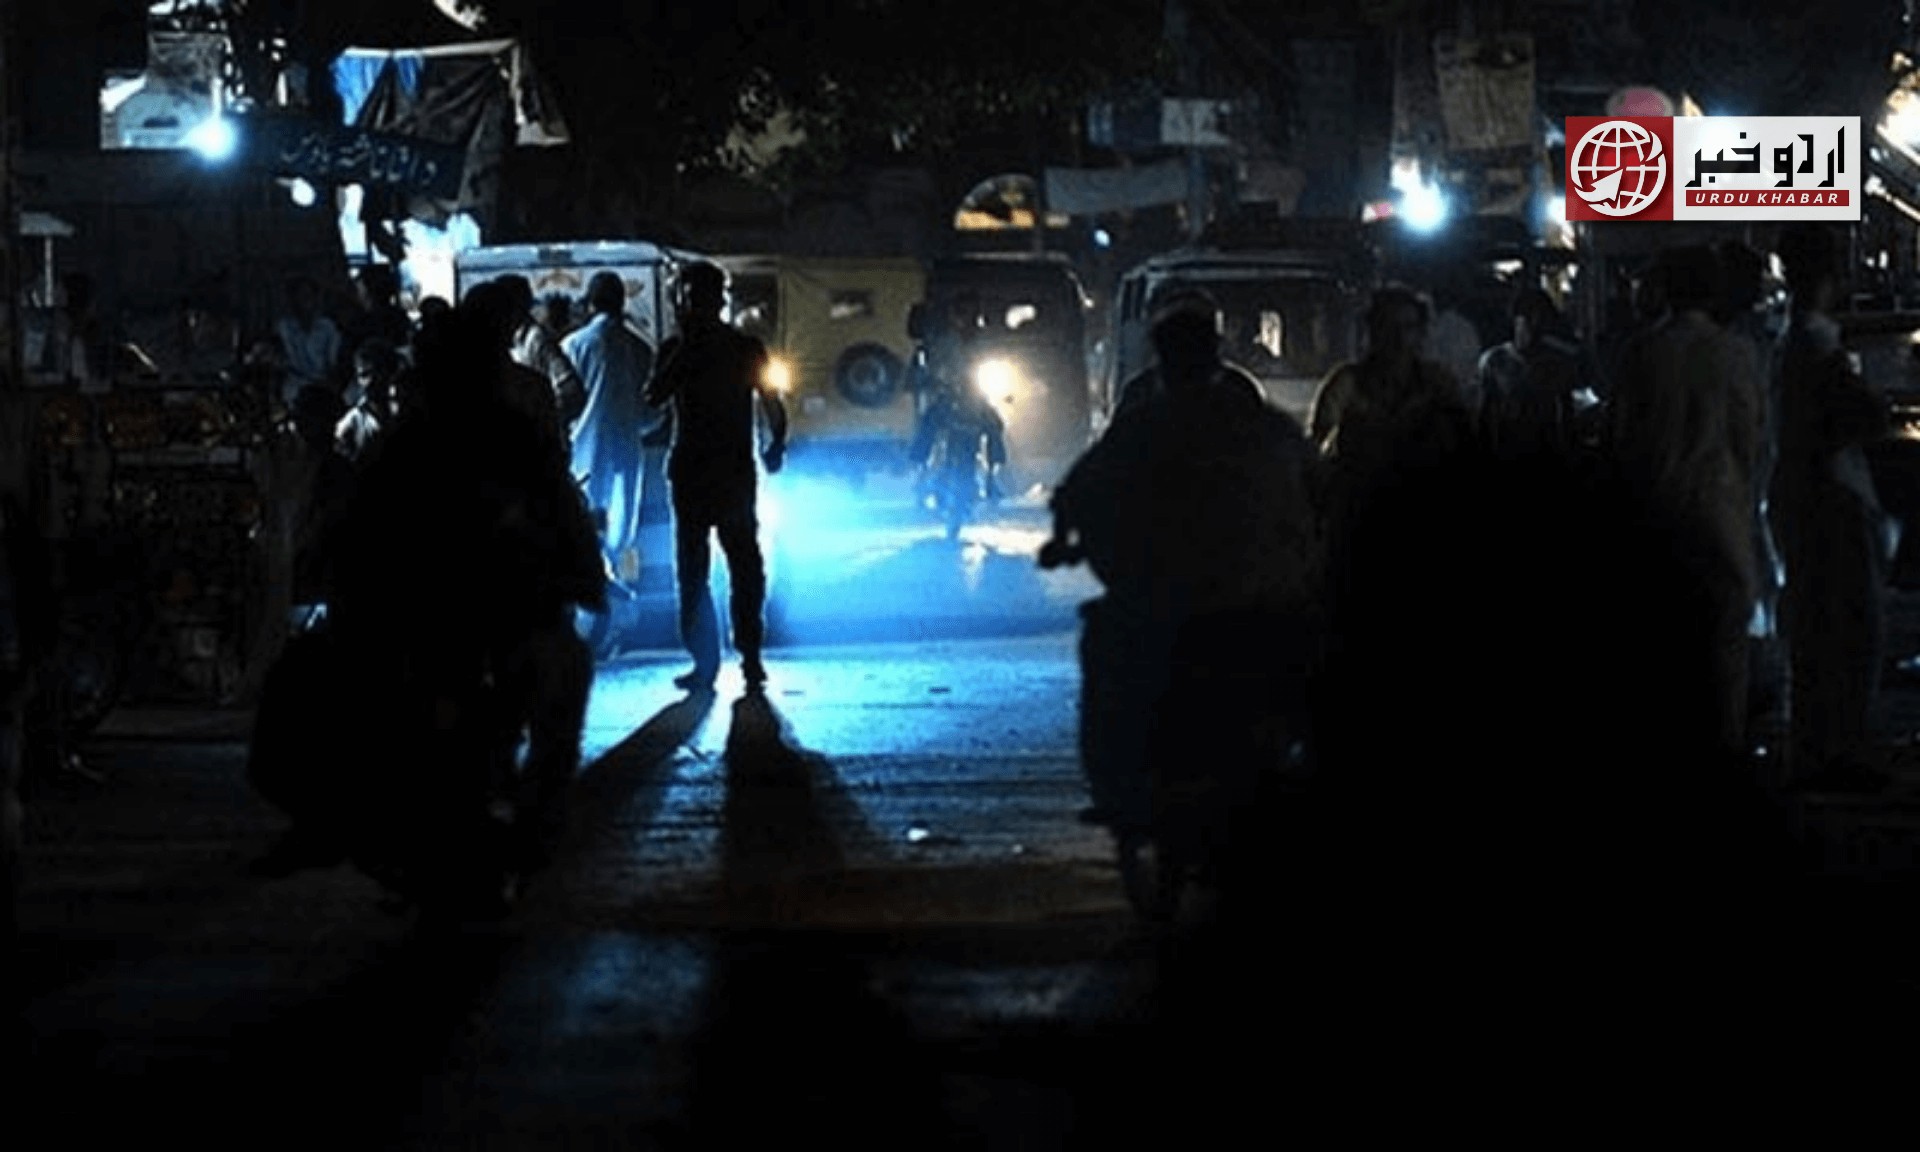 کراچی میں لمبی لوڈشیڈنگ، سڑکوں پر تین تین فٹ گڑھے پڑ گئے، انتظامیہ غائب، شہریوں کا احتجاج